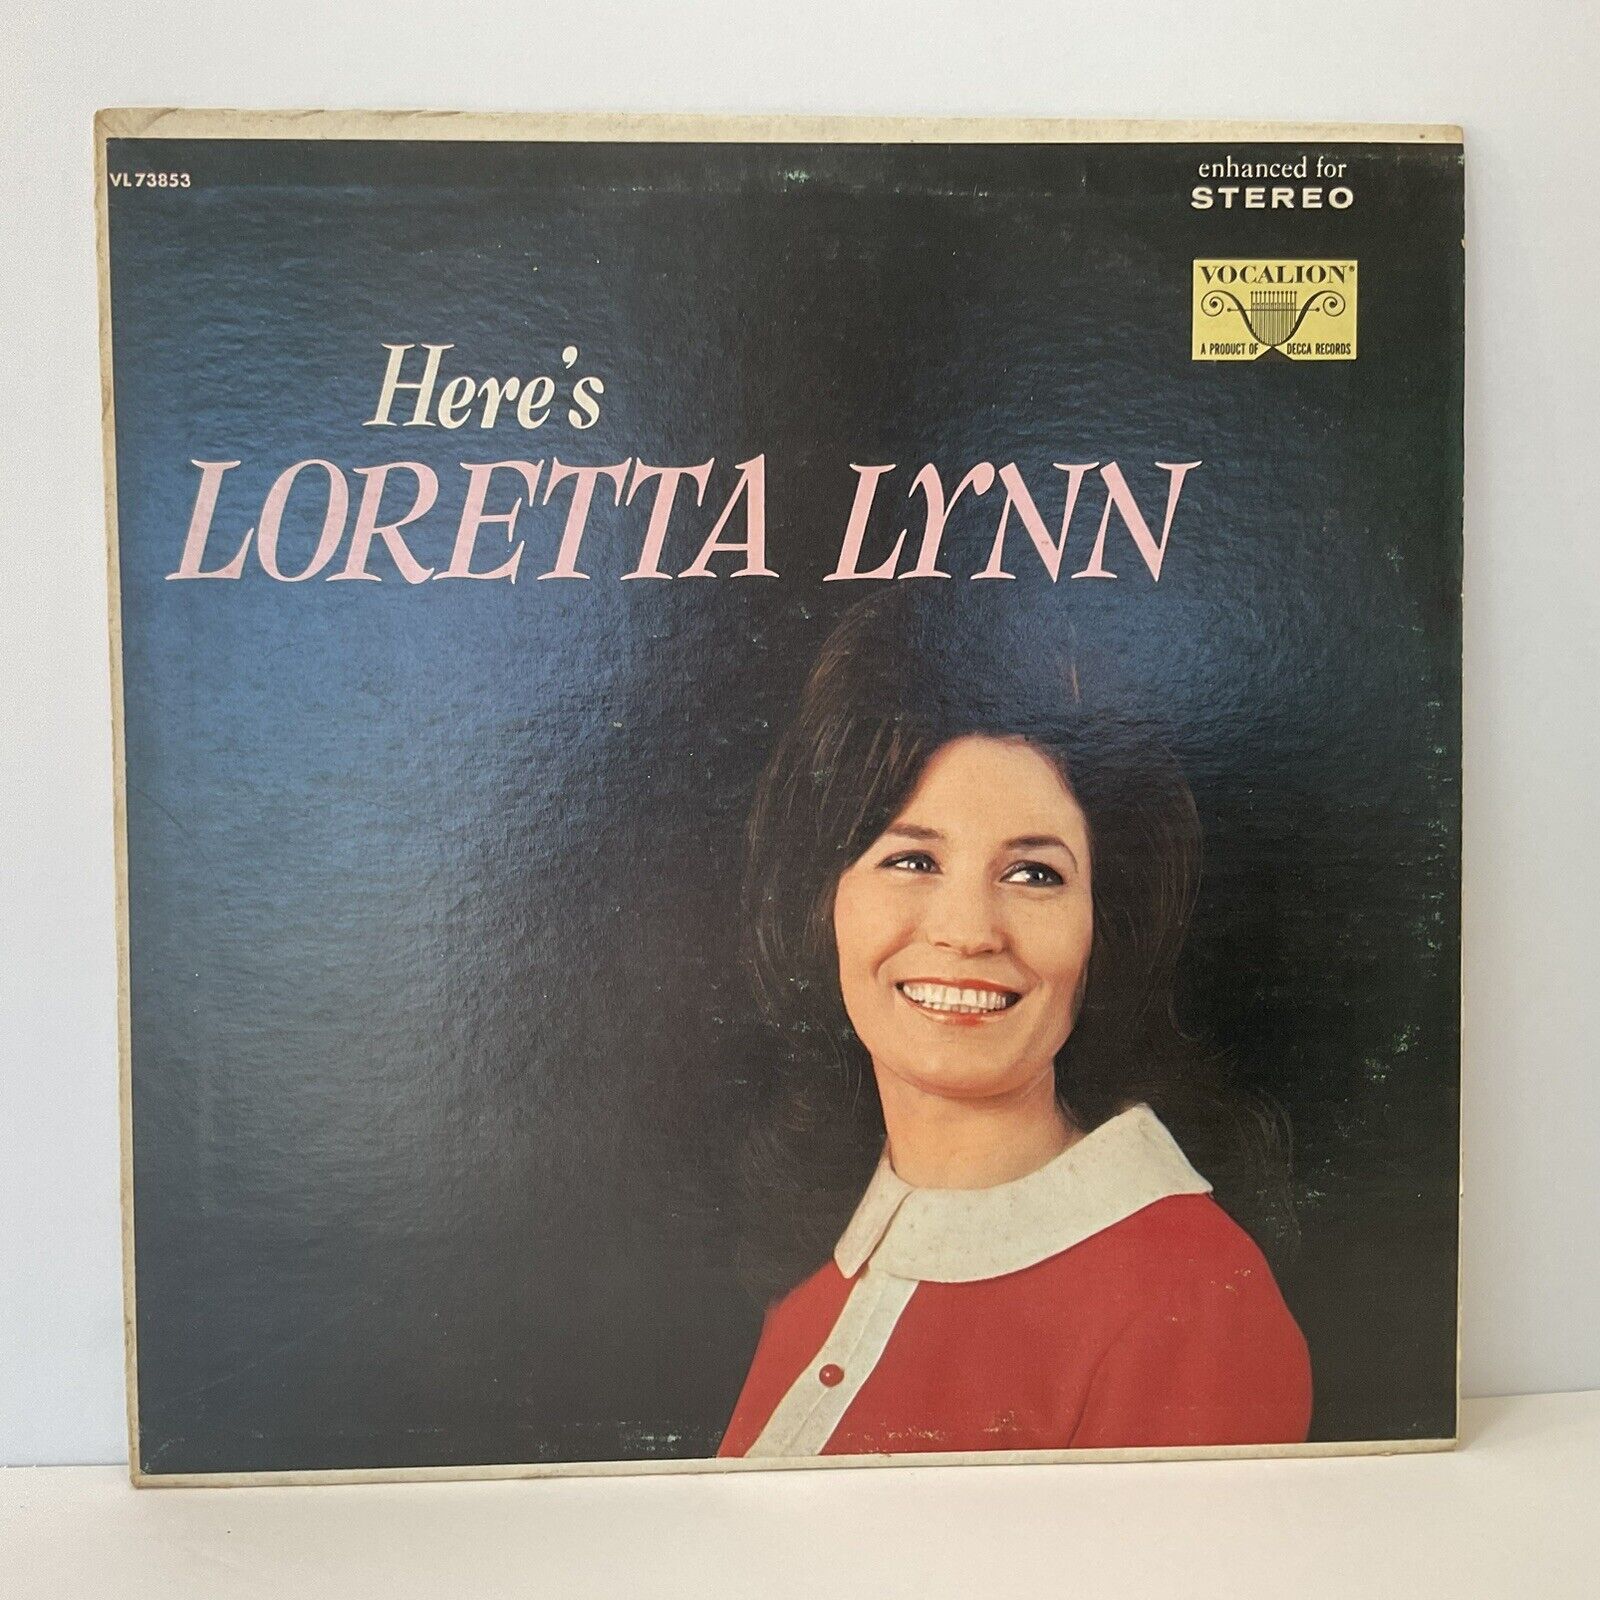 Loretta Lynn "Here's Loretta Lynn" Vinyl LP 1968 DECCA Records